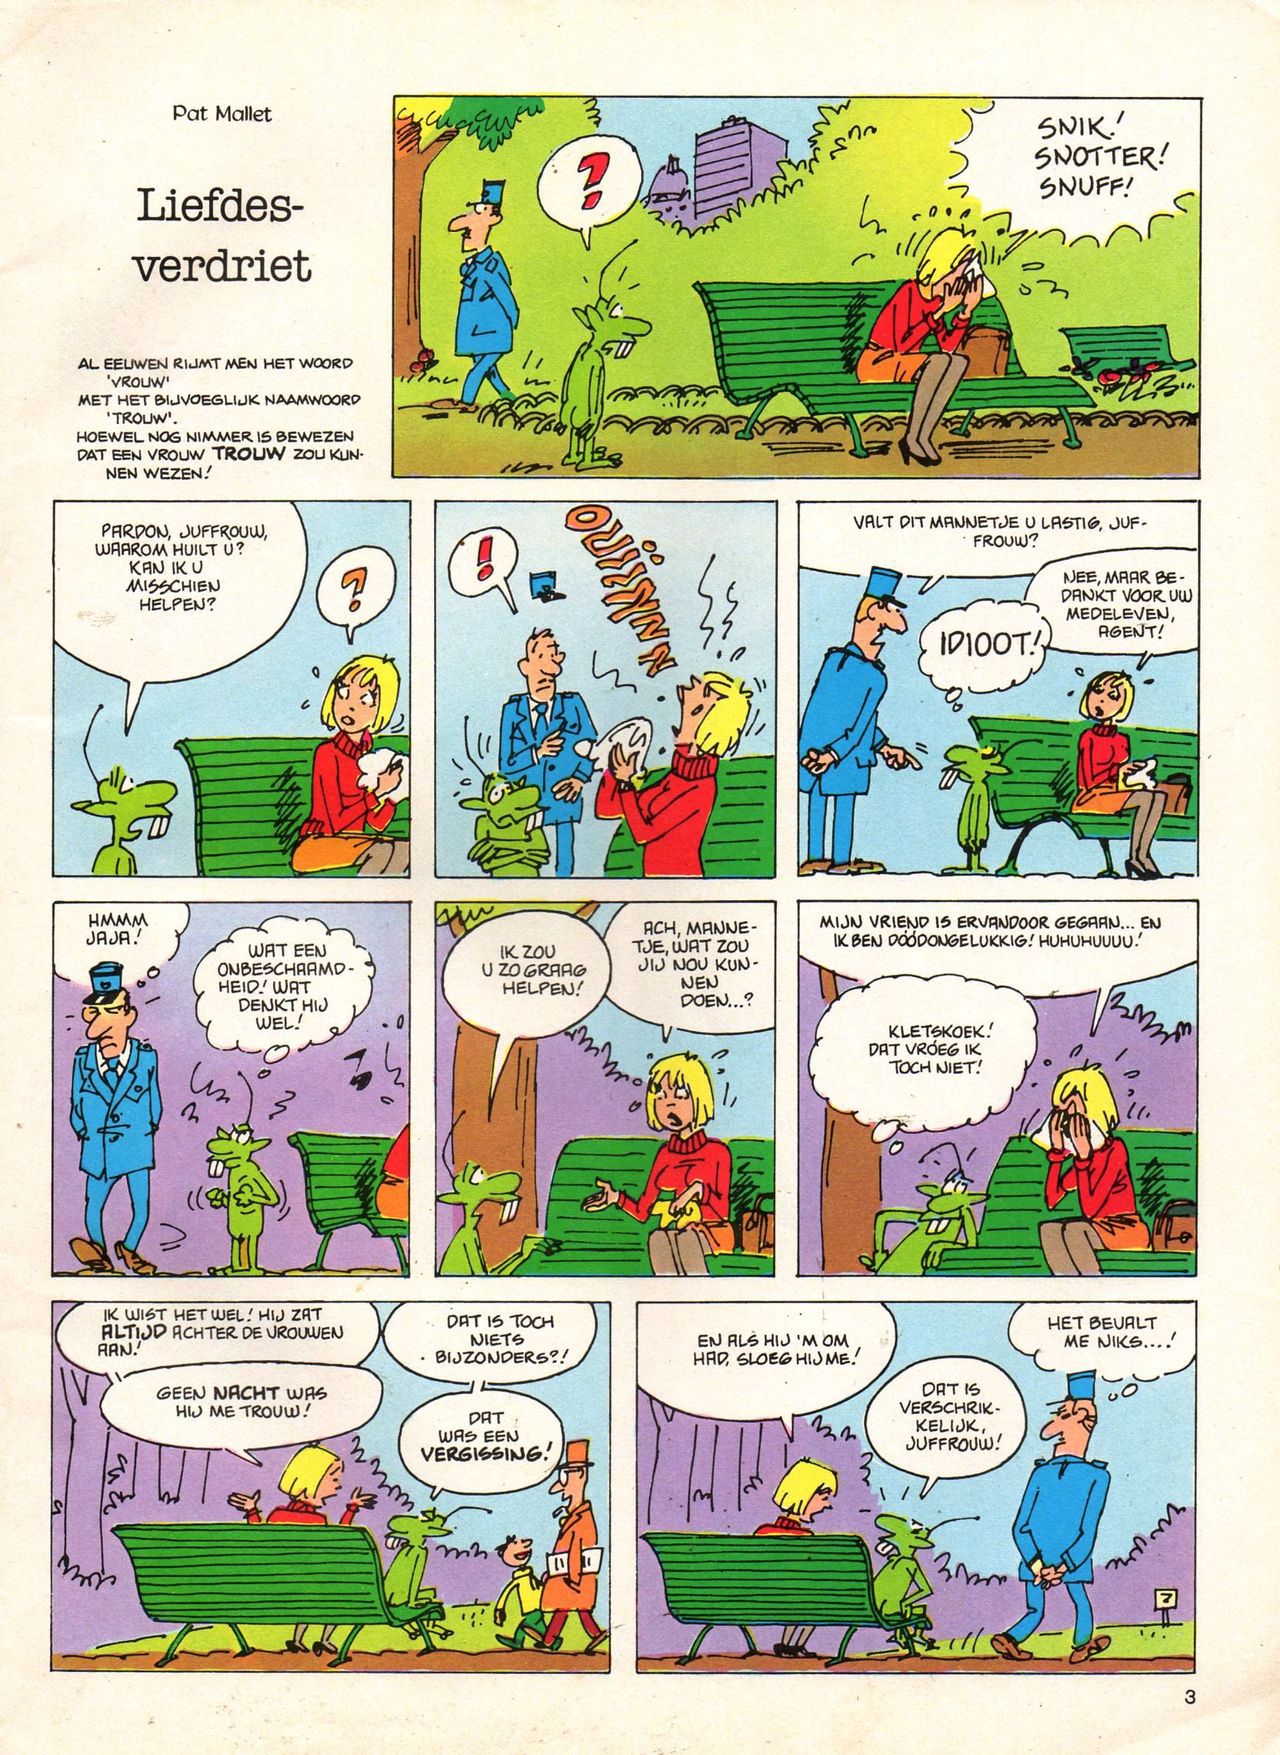 Het Is Groen En Het.. - 04 - Mag Ik Die Ballen.. OH, PARDON! (Dutch) Een oude humoristische serie van Pat Mallet 3